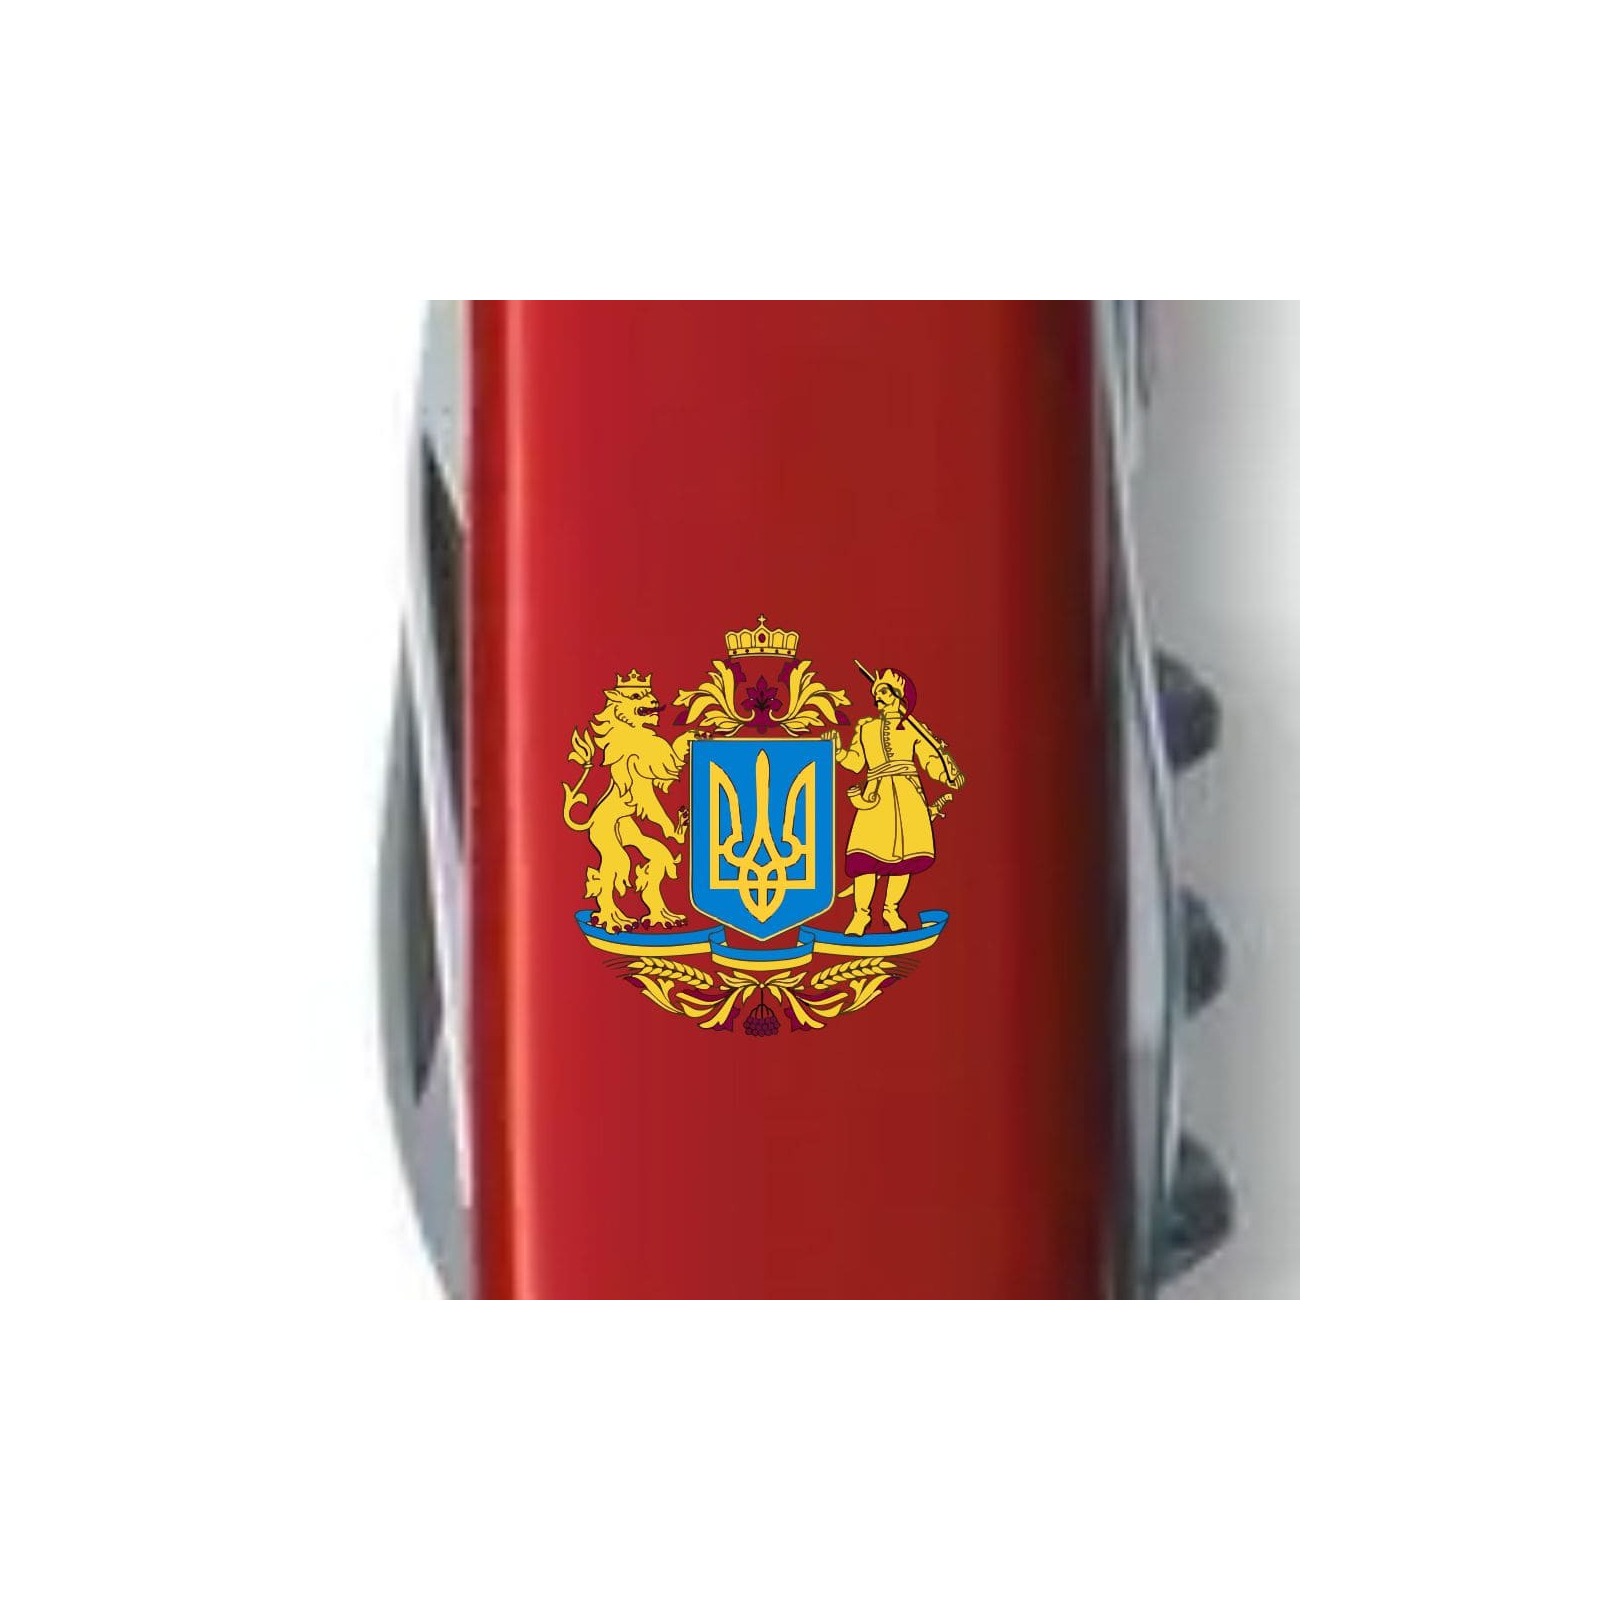 Нож Victorinox Spartan Ukraine Red "Тризуб ОУН" (1.3603_T0300u) изображение 4